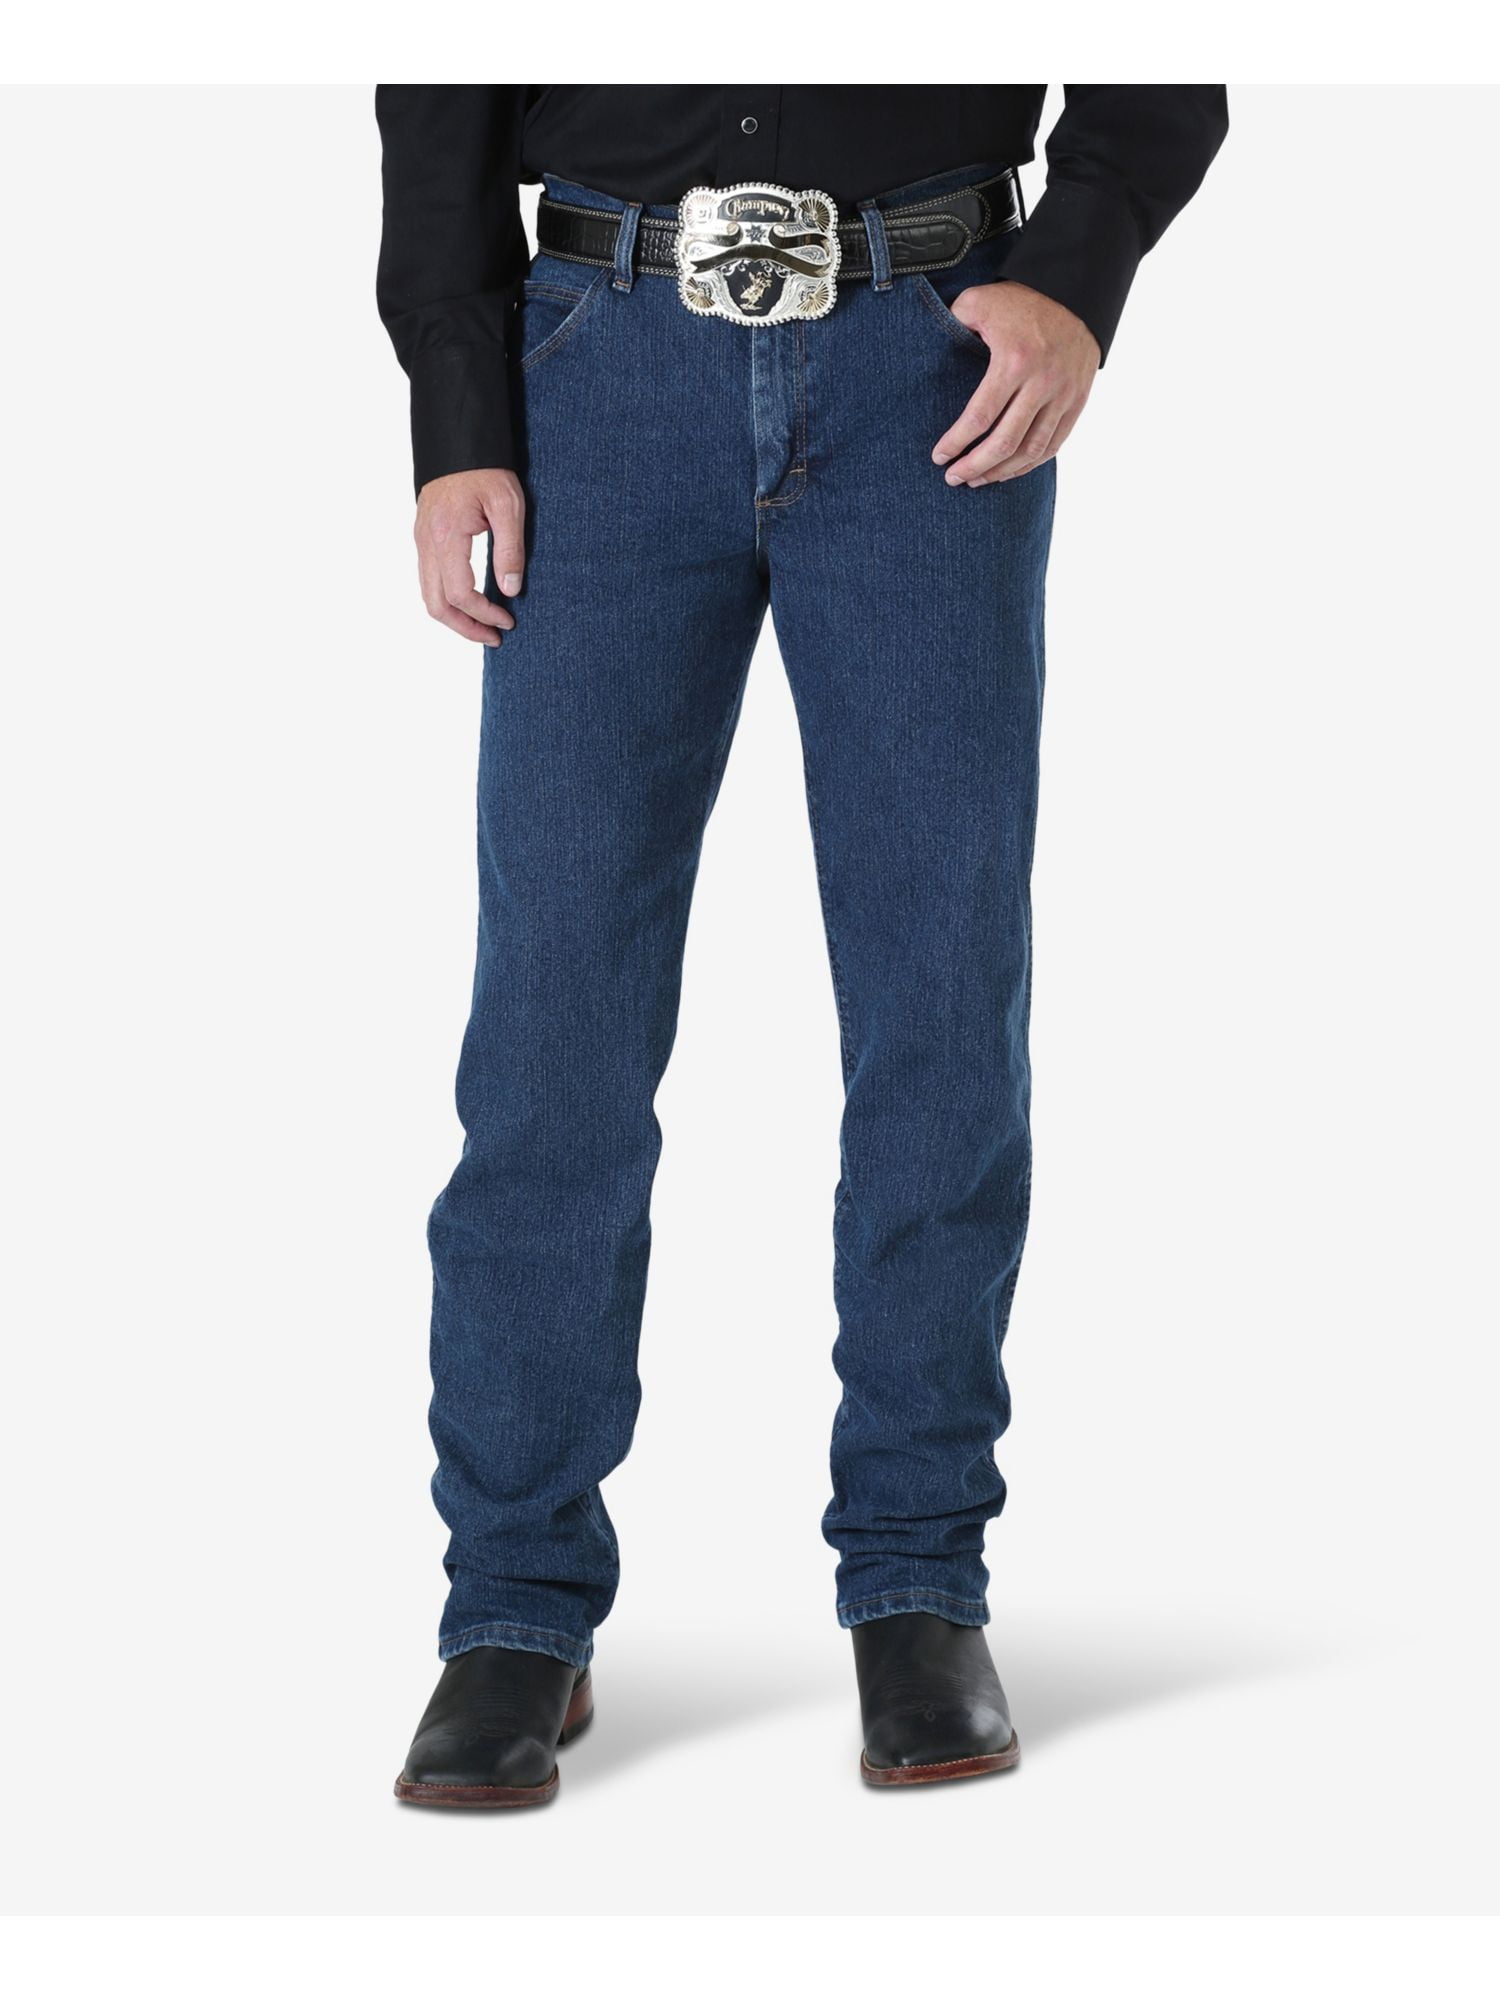 syreindhold Accepteret Grape WRANGLER Mens Navy Regular Fit Jeans 34 X 30 - Walmart.com